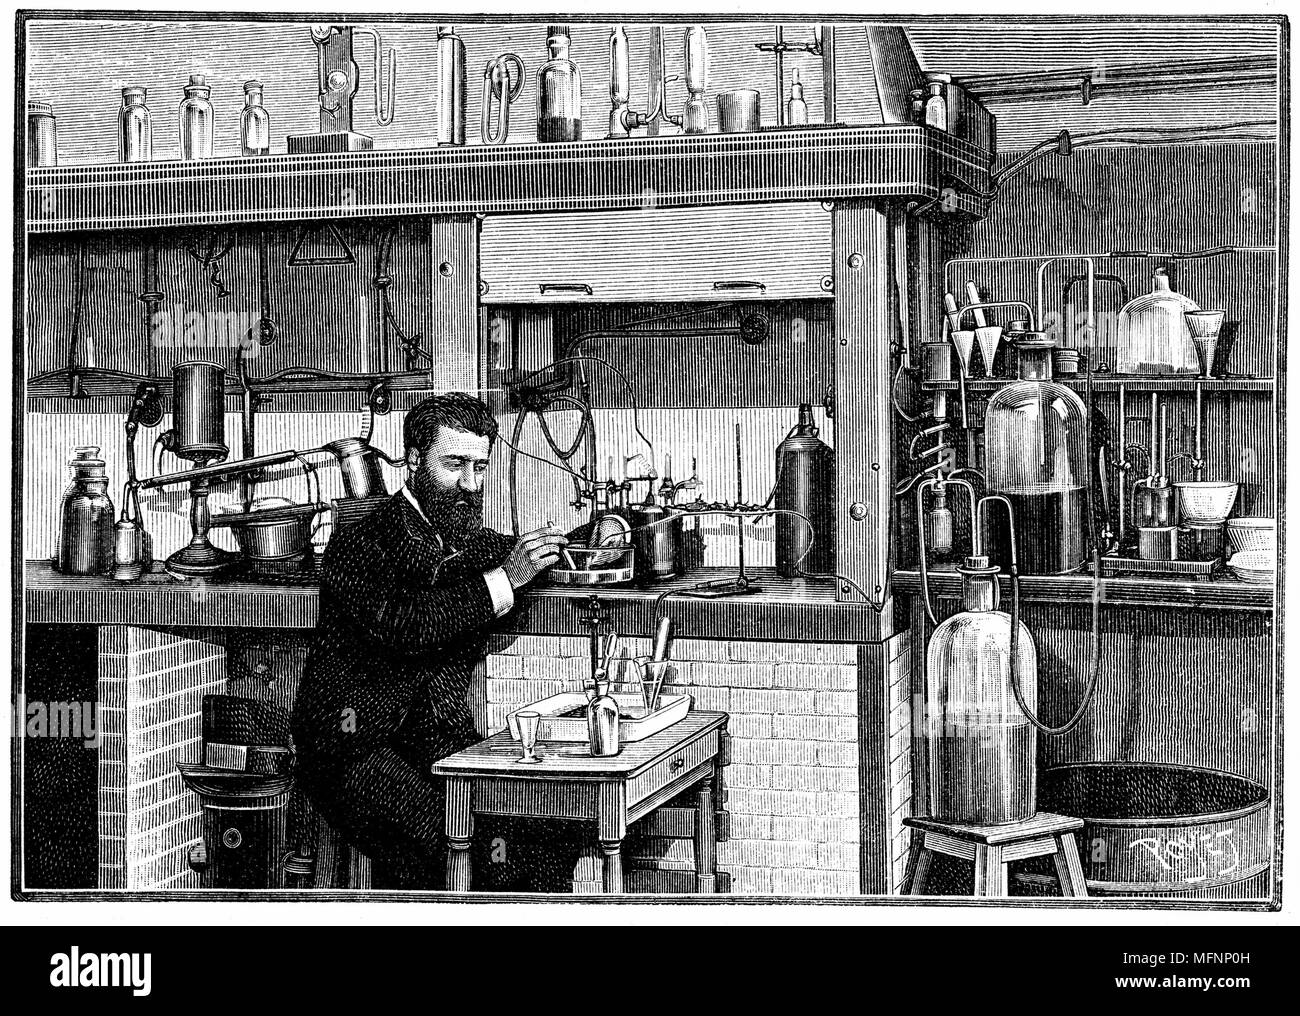 Henri Moissan (1852-1907) chimico francese, lavorando su fluoro nel suo laboratorio presso l'Ecole de pharmacie, Parigi. Egli ha isolato il fluoro nel 1883. Più tardi nella sua carriera ha lavorato sulla produzione di gemme artificiali, particolarmente brillanti. Da 'La natura", Parigi, 1903 Foto Stock